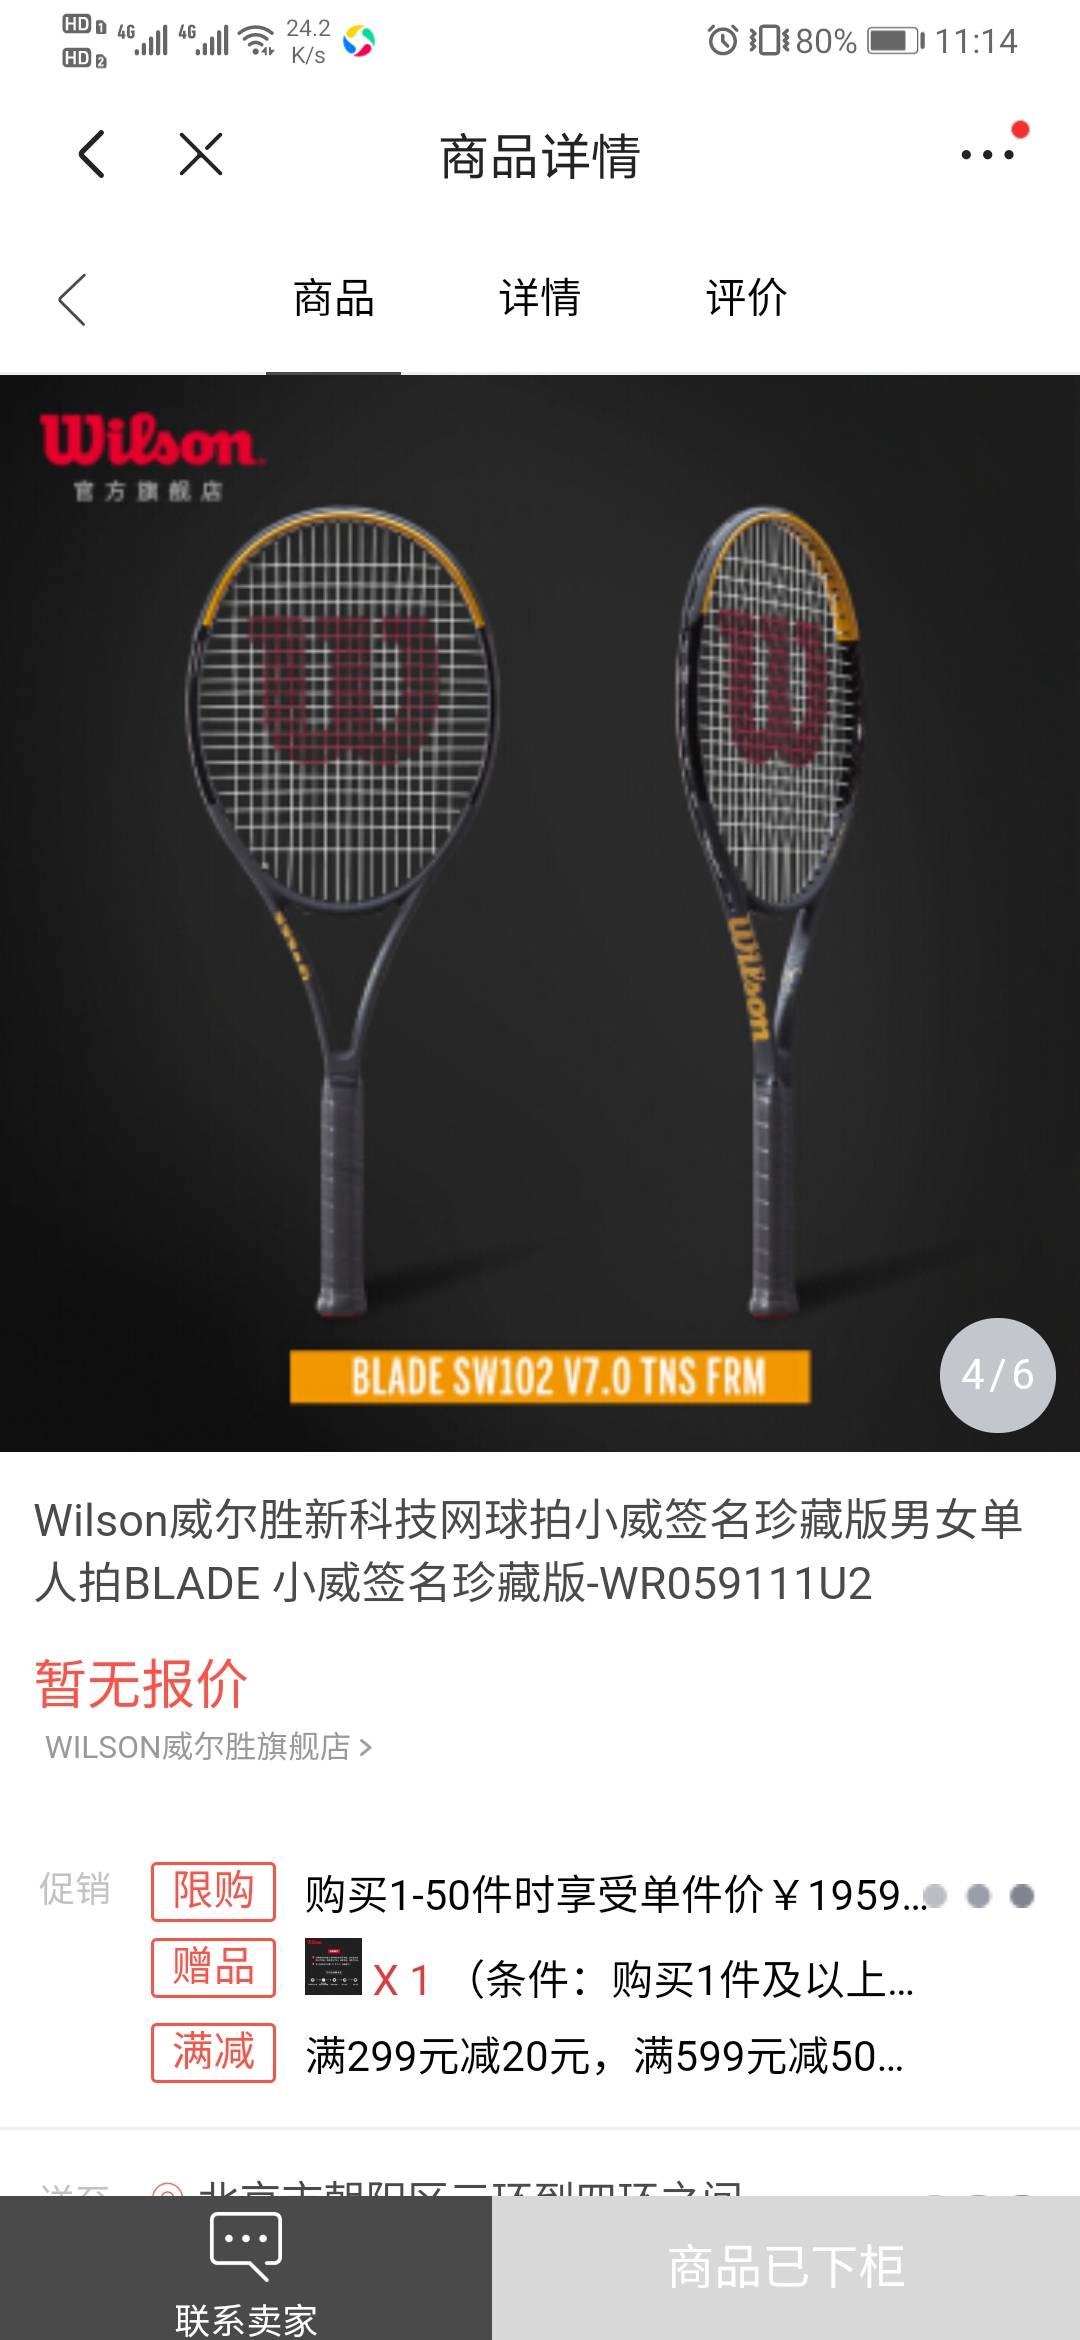 你的天赋，我的礼物—Wilson威尔胜全新网球全场景体验店在上海开幕 - 红秀GRAZIA